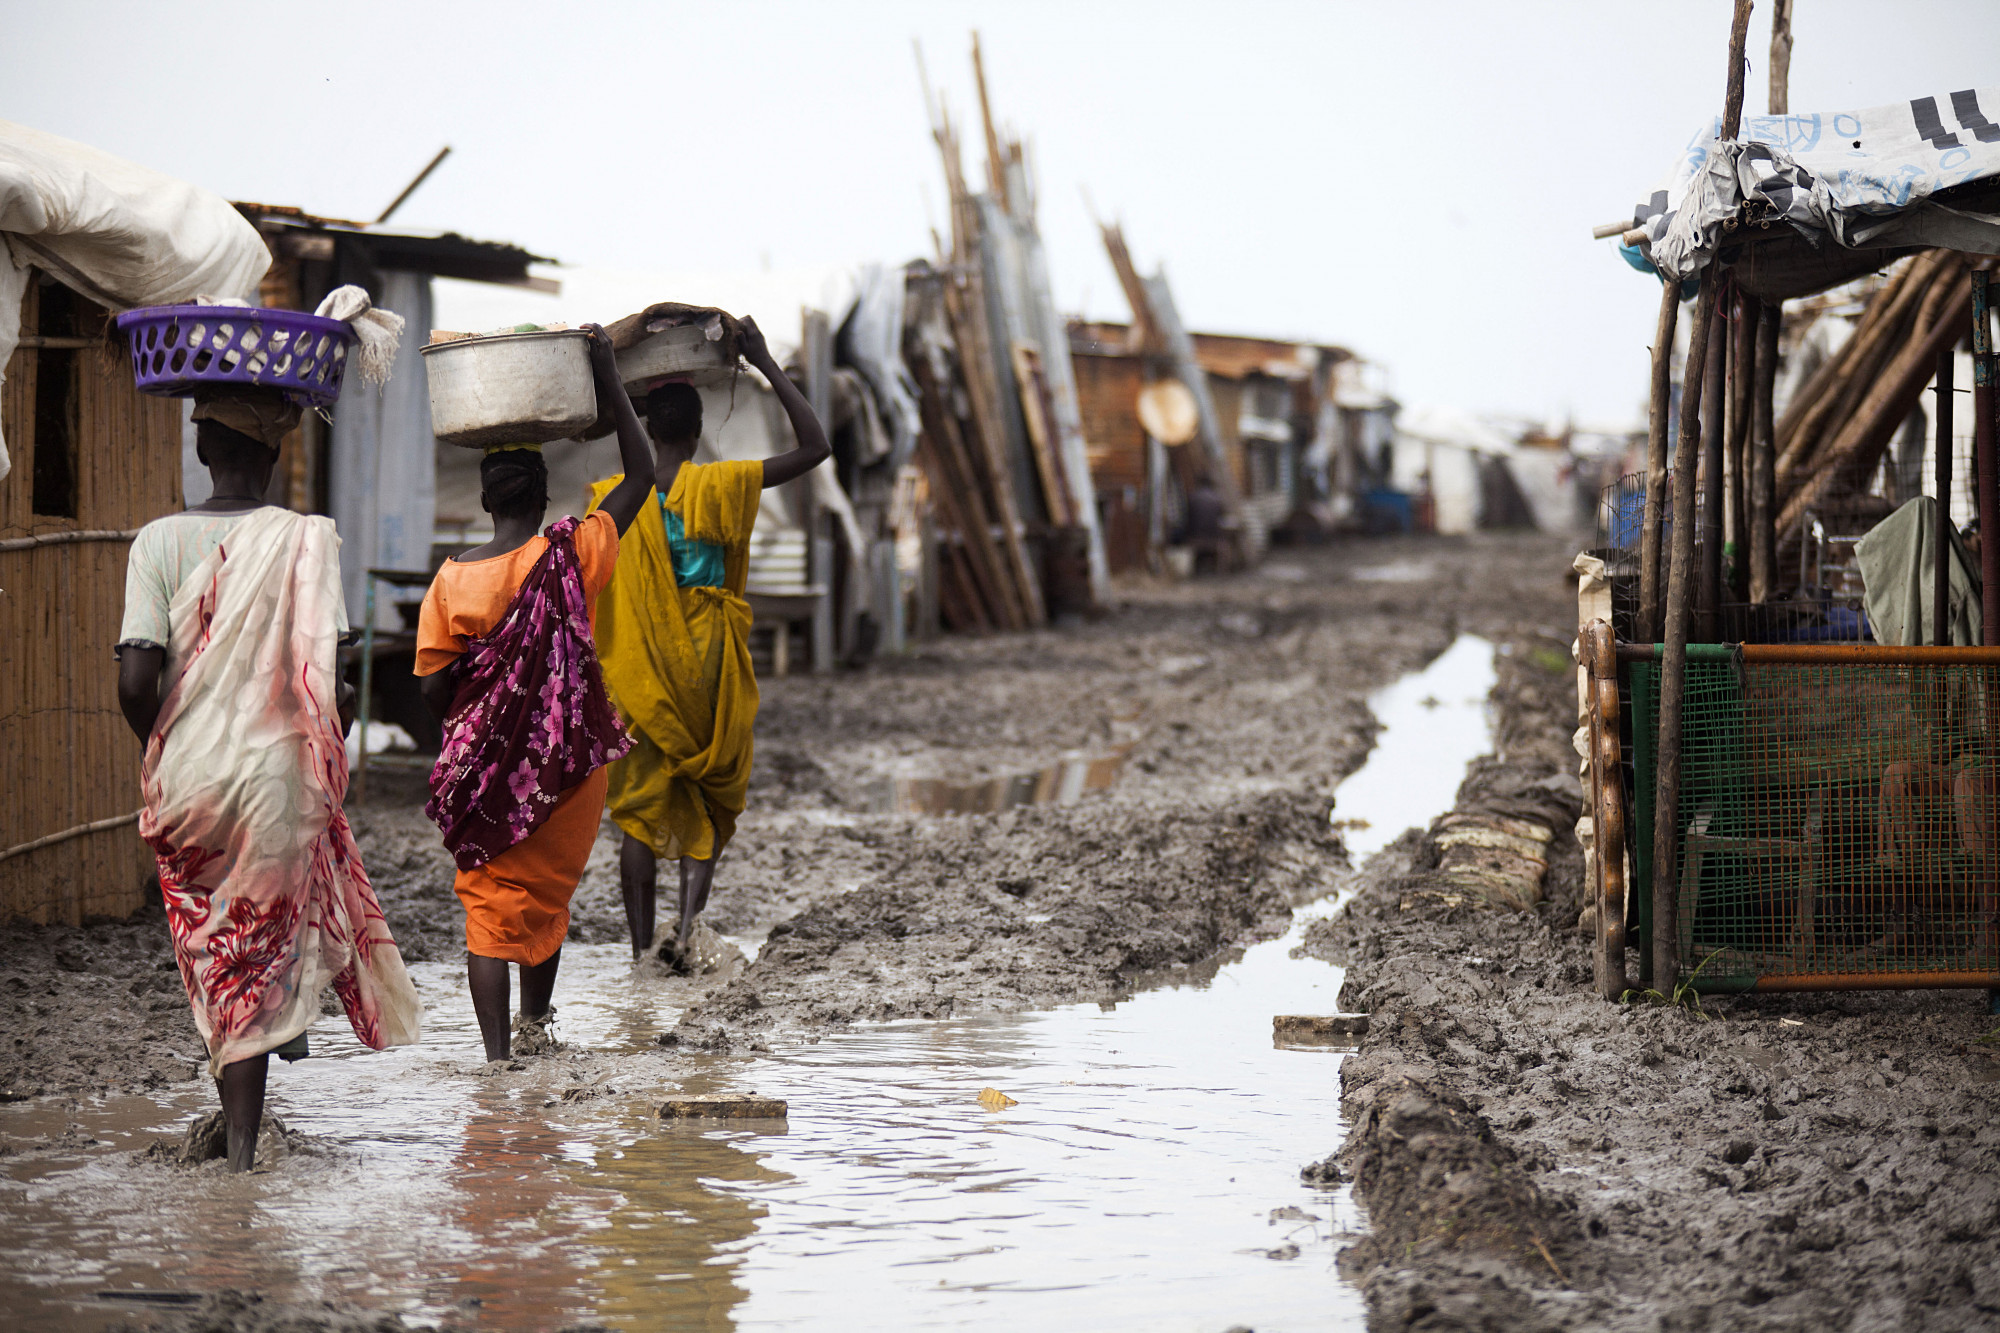 Évek óta erőszakolják az ENSZ békefenntartói a dél-szudáni menekülttáborokban élő nőket